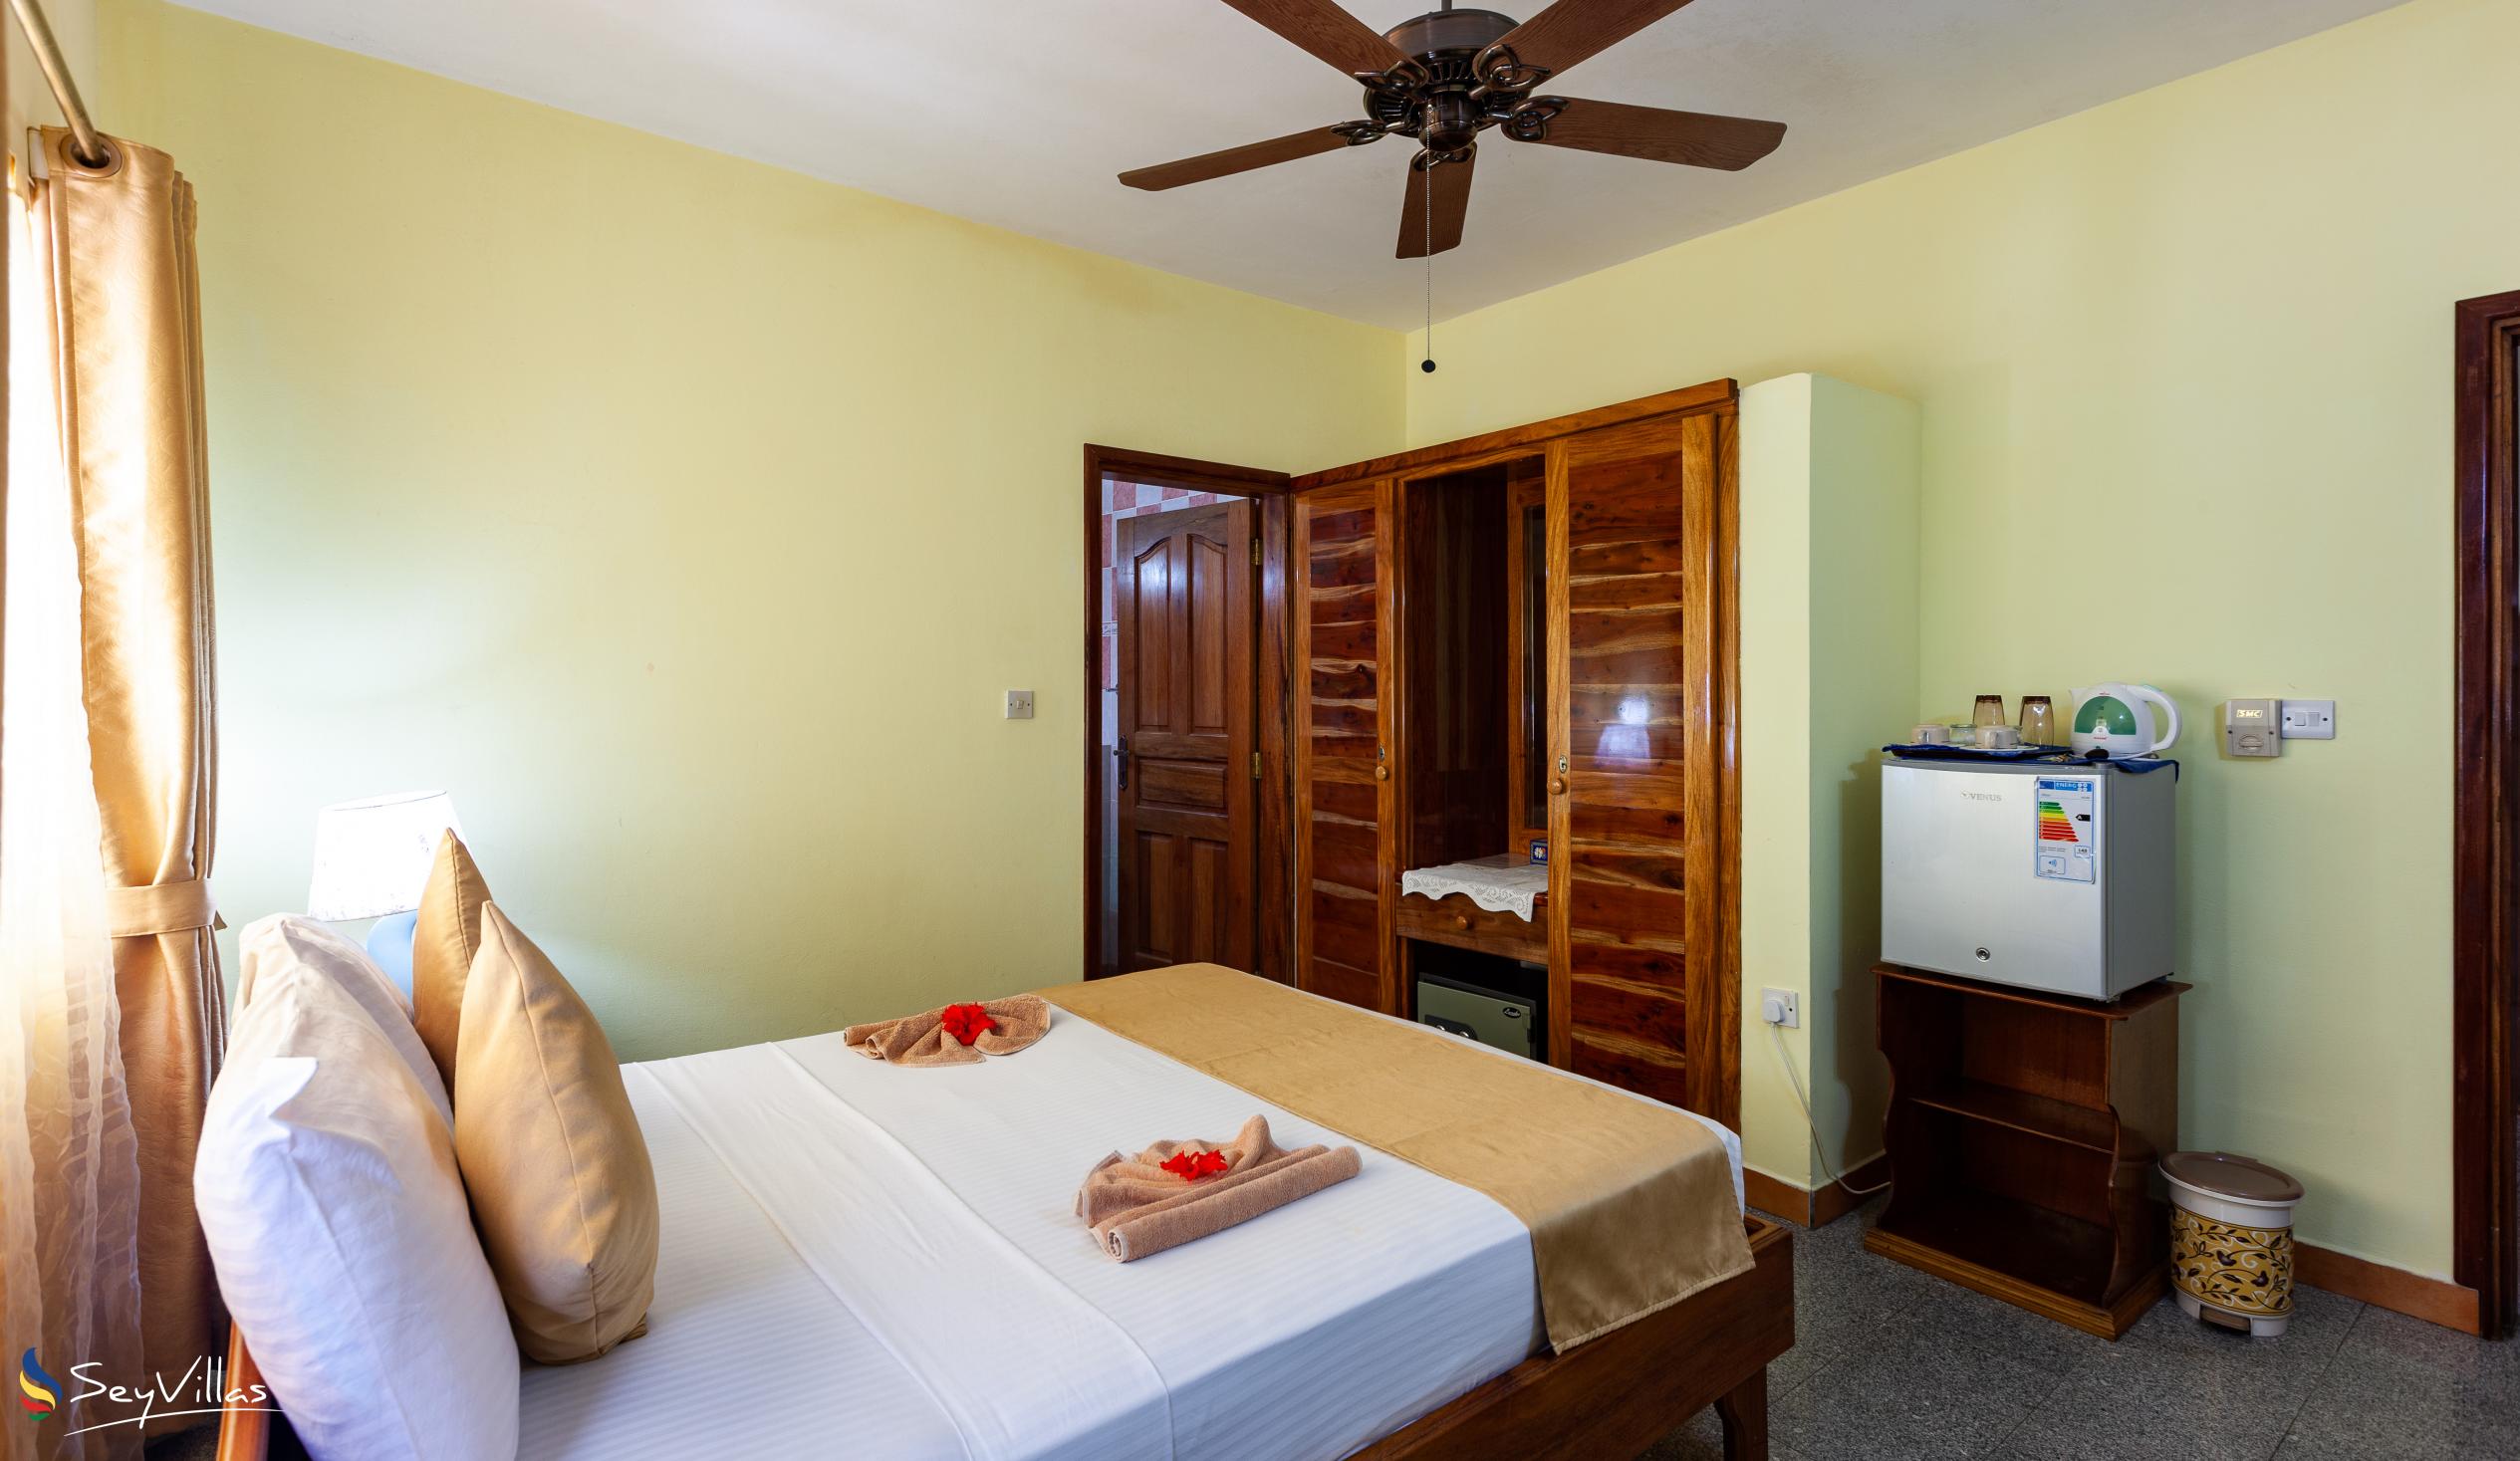 Foto 89: Villa Bananier - Standard Room - Praslin (Seychelles)